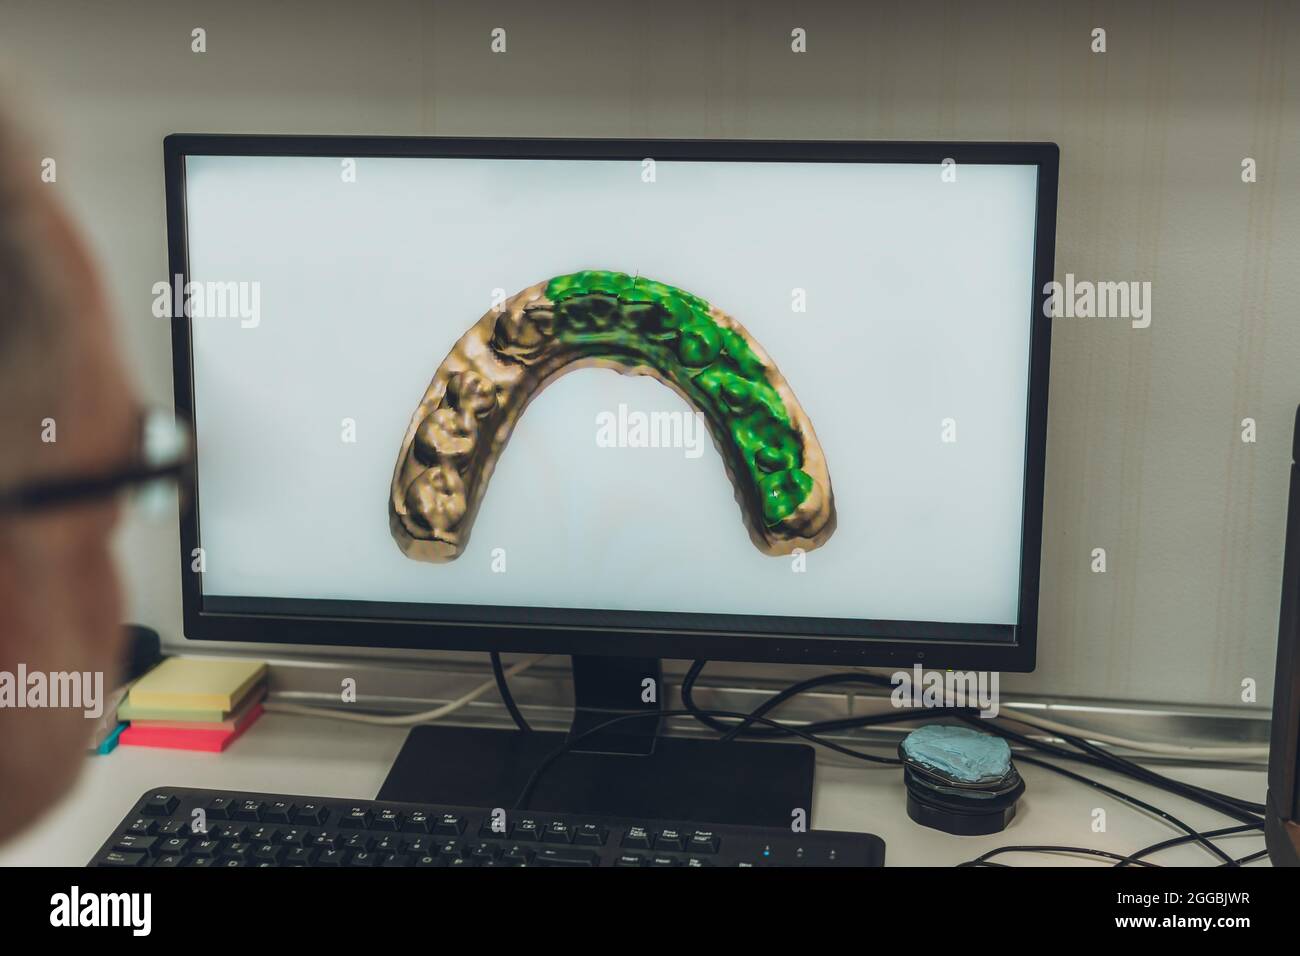 Professionnel regardant un écran d'ordinateur avec une image numérisée d'un moule dentaire dans un laboratoire Banque D'Images